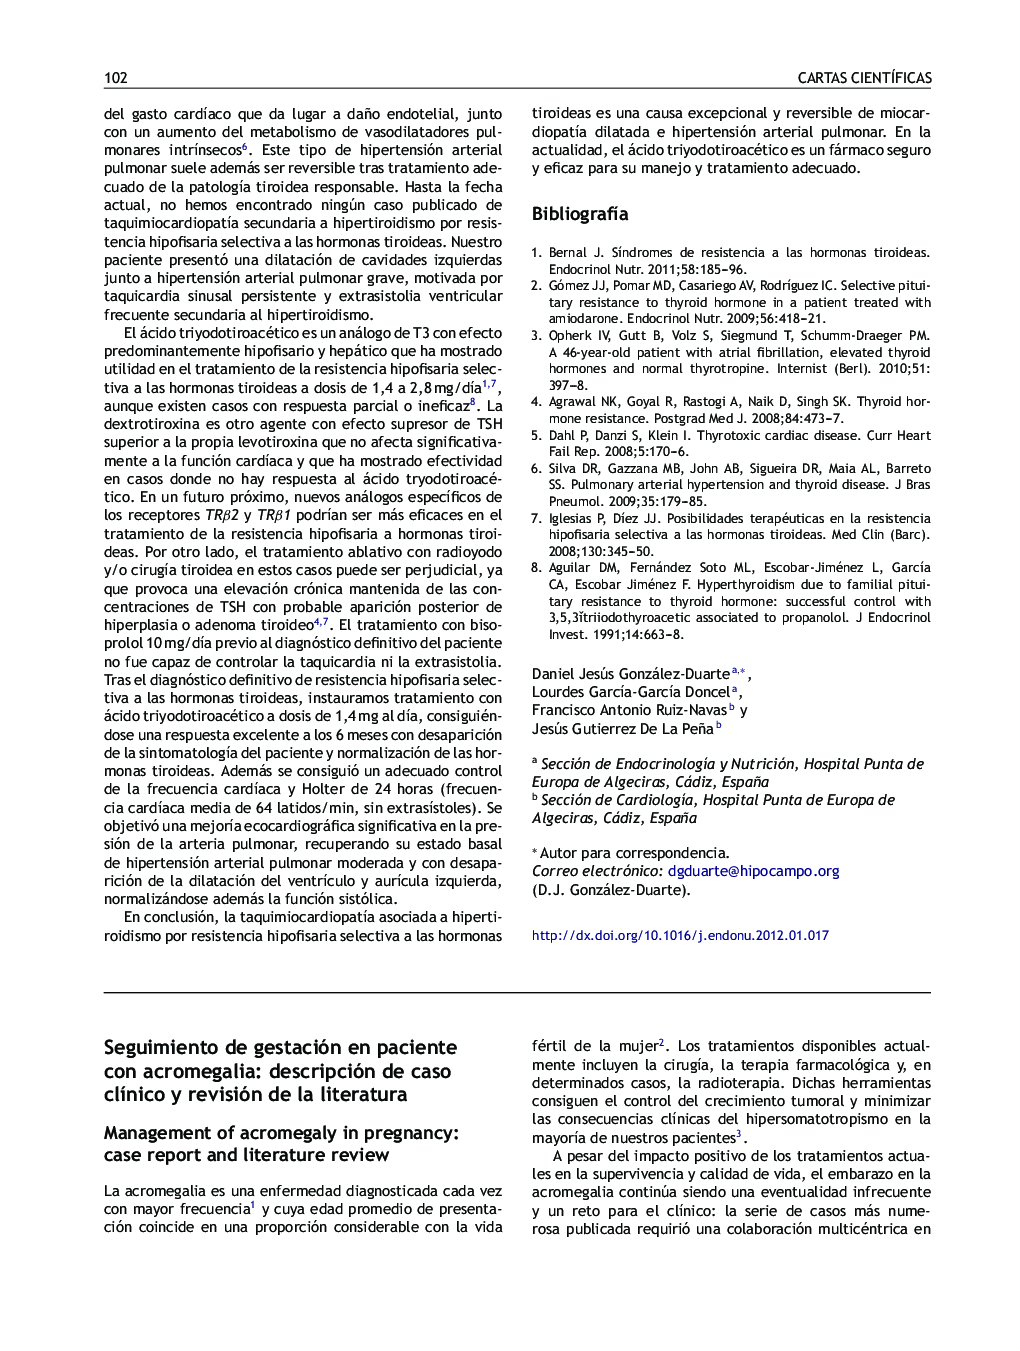 Seguimiento de gestación en paciente con acromegalia: descripción de caso clÃ­nico y revisión de la literatura